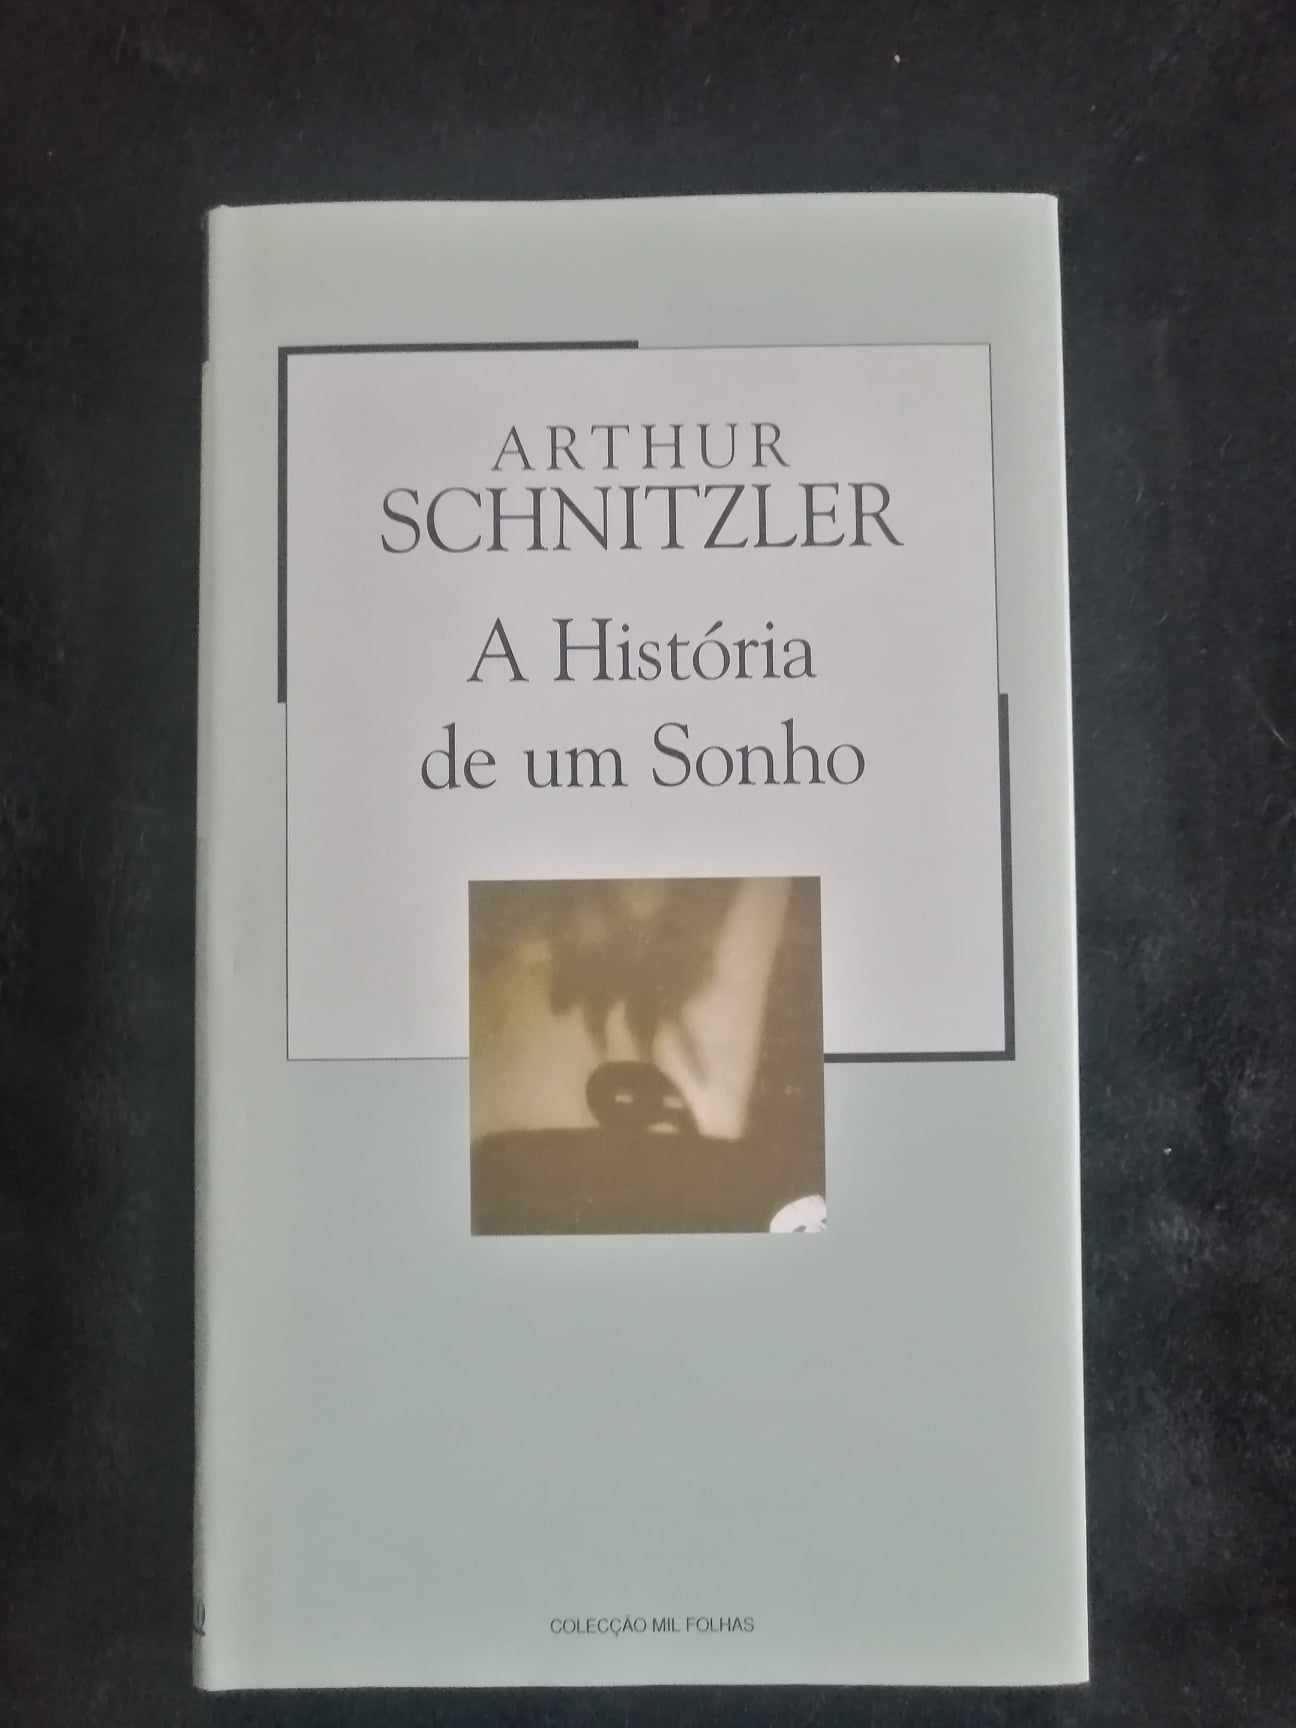 Livro "A história de um sonho" de Arthur Schnitzler - Novo